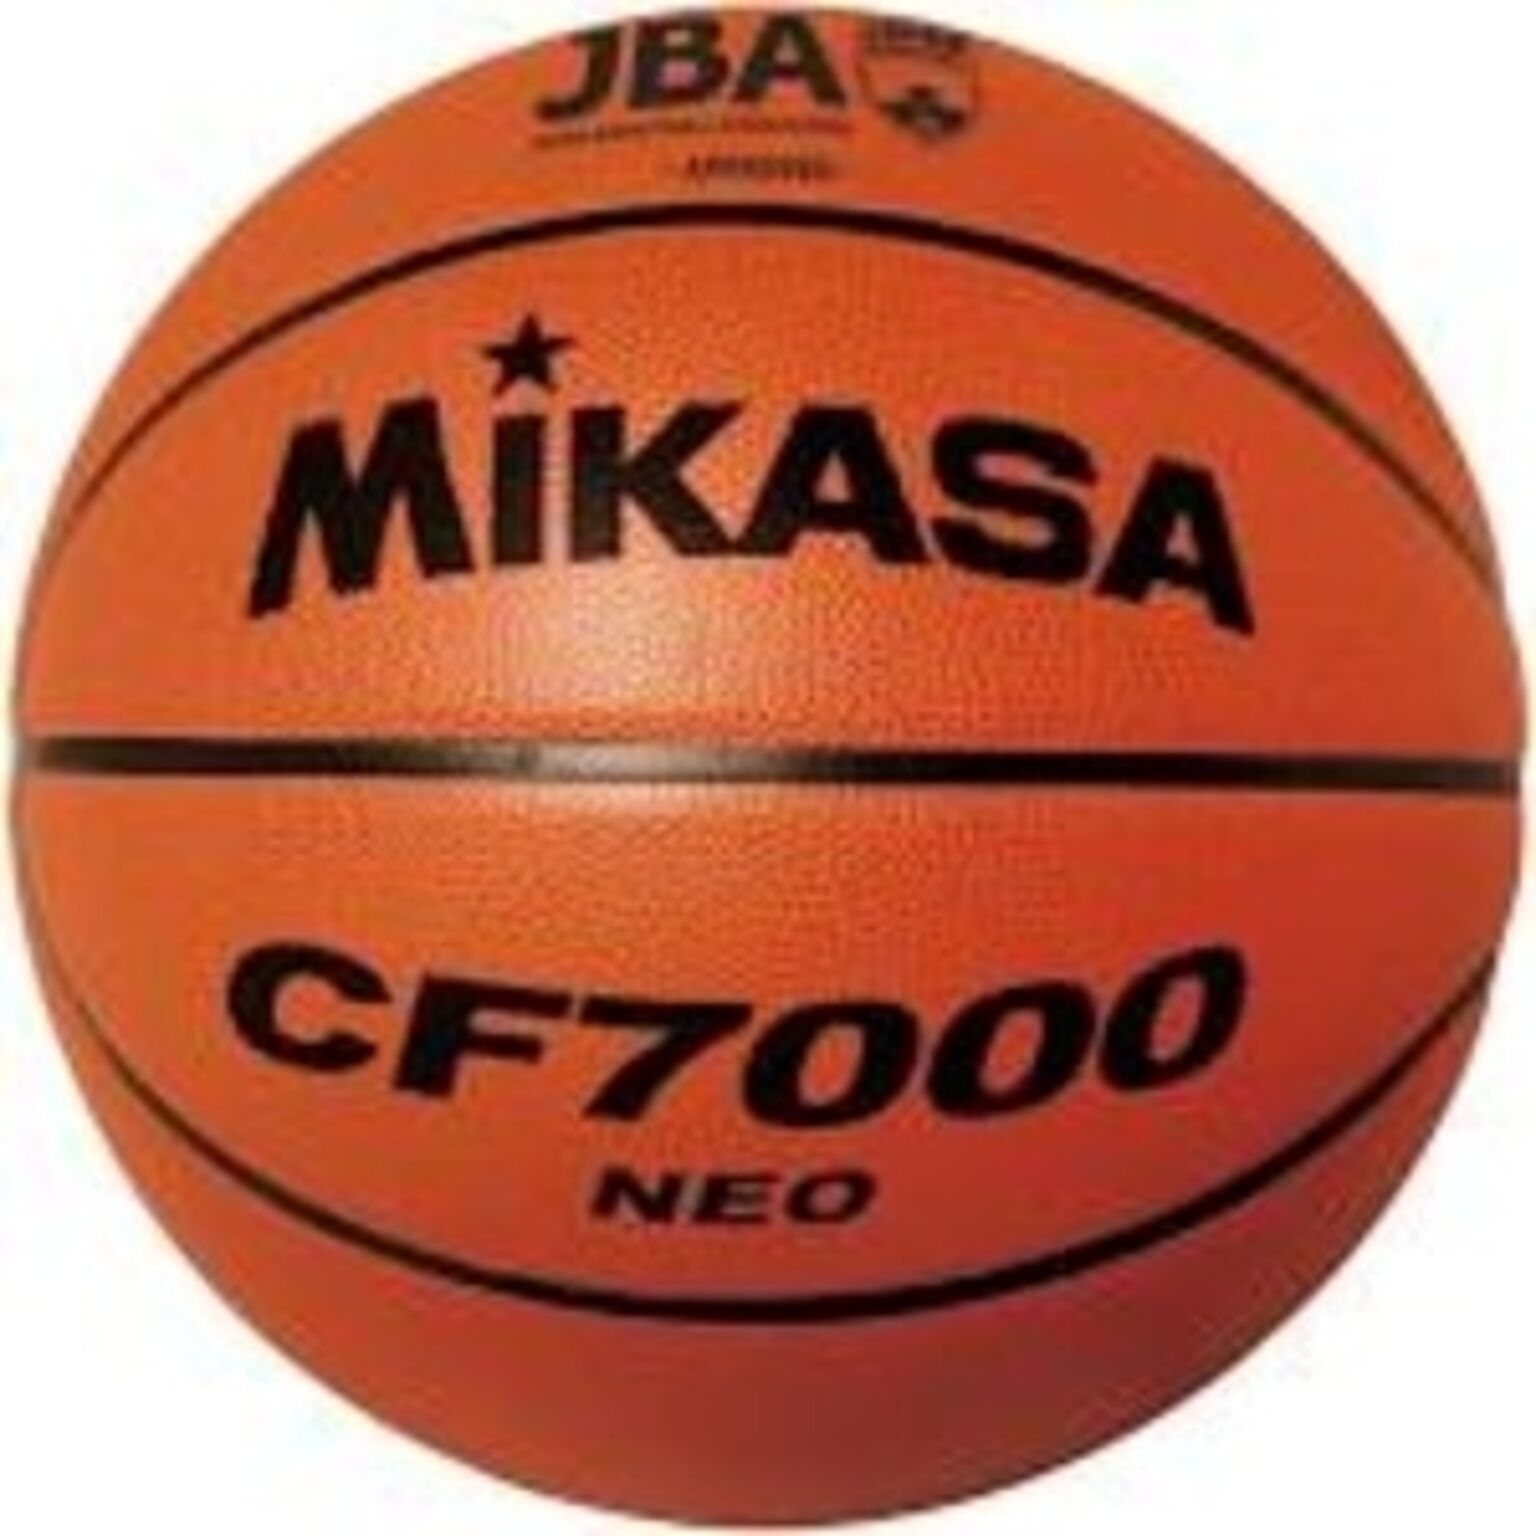 バスケットボール 検定球 7号 天然皮革 男子用(一般/大学/高校) CF7000NEO【代引不可】